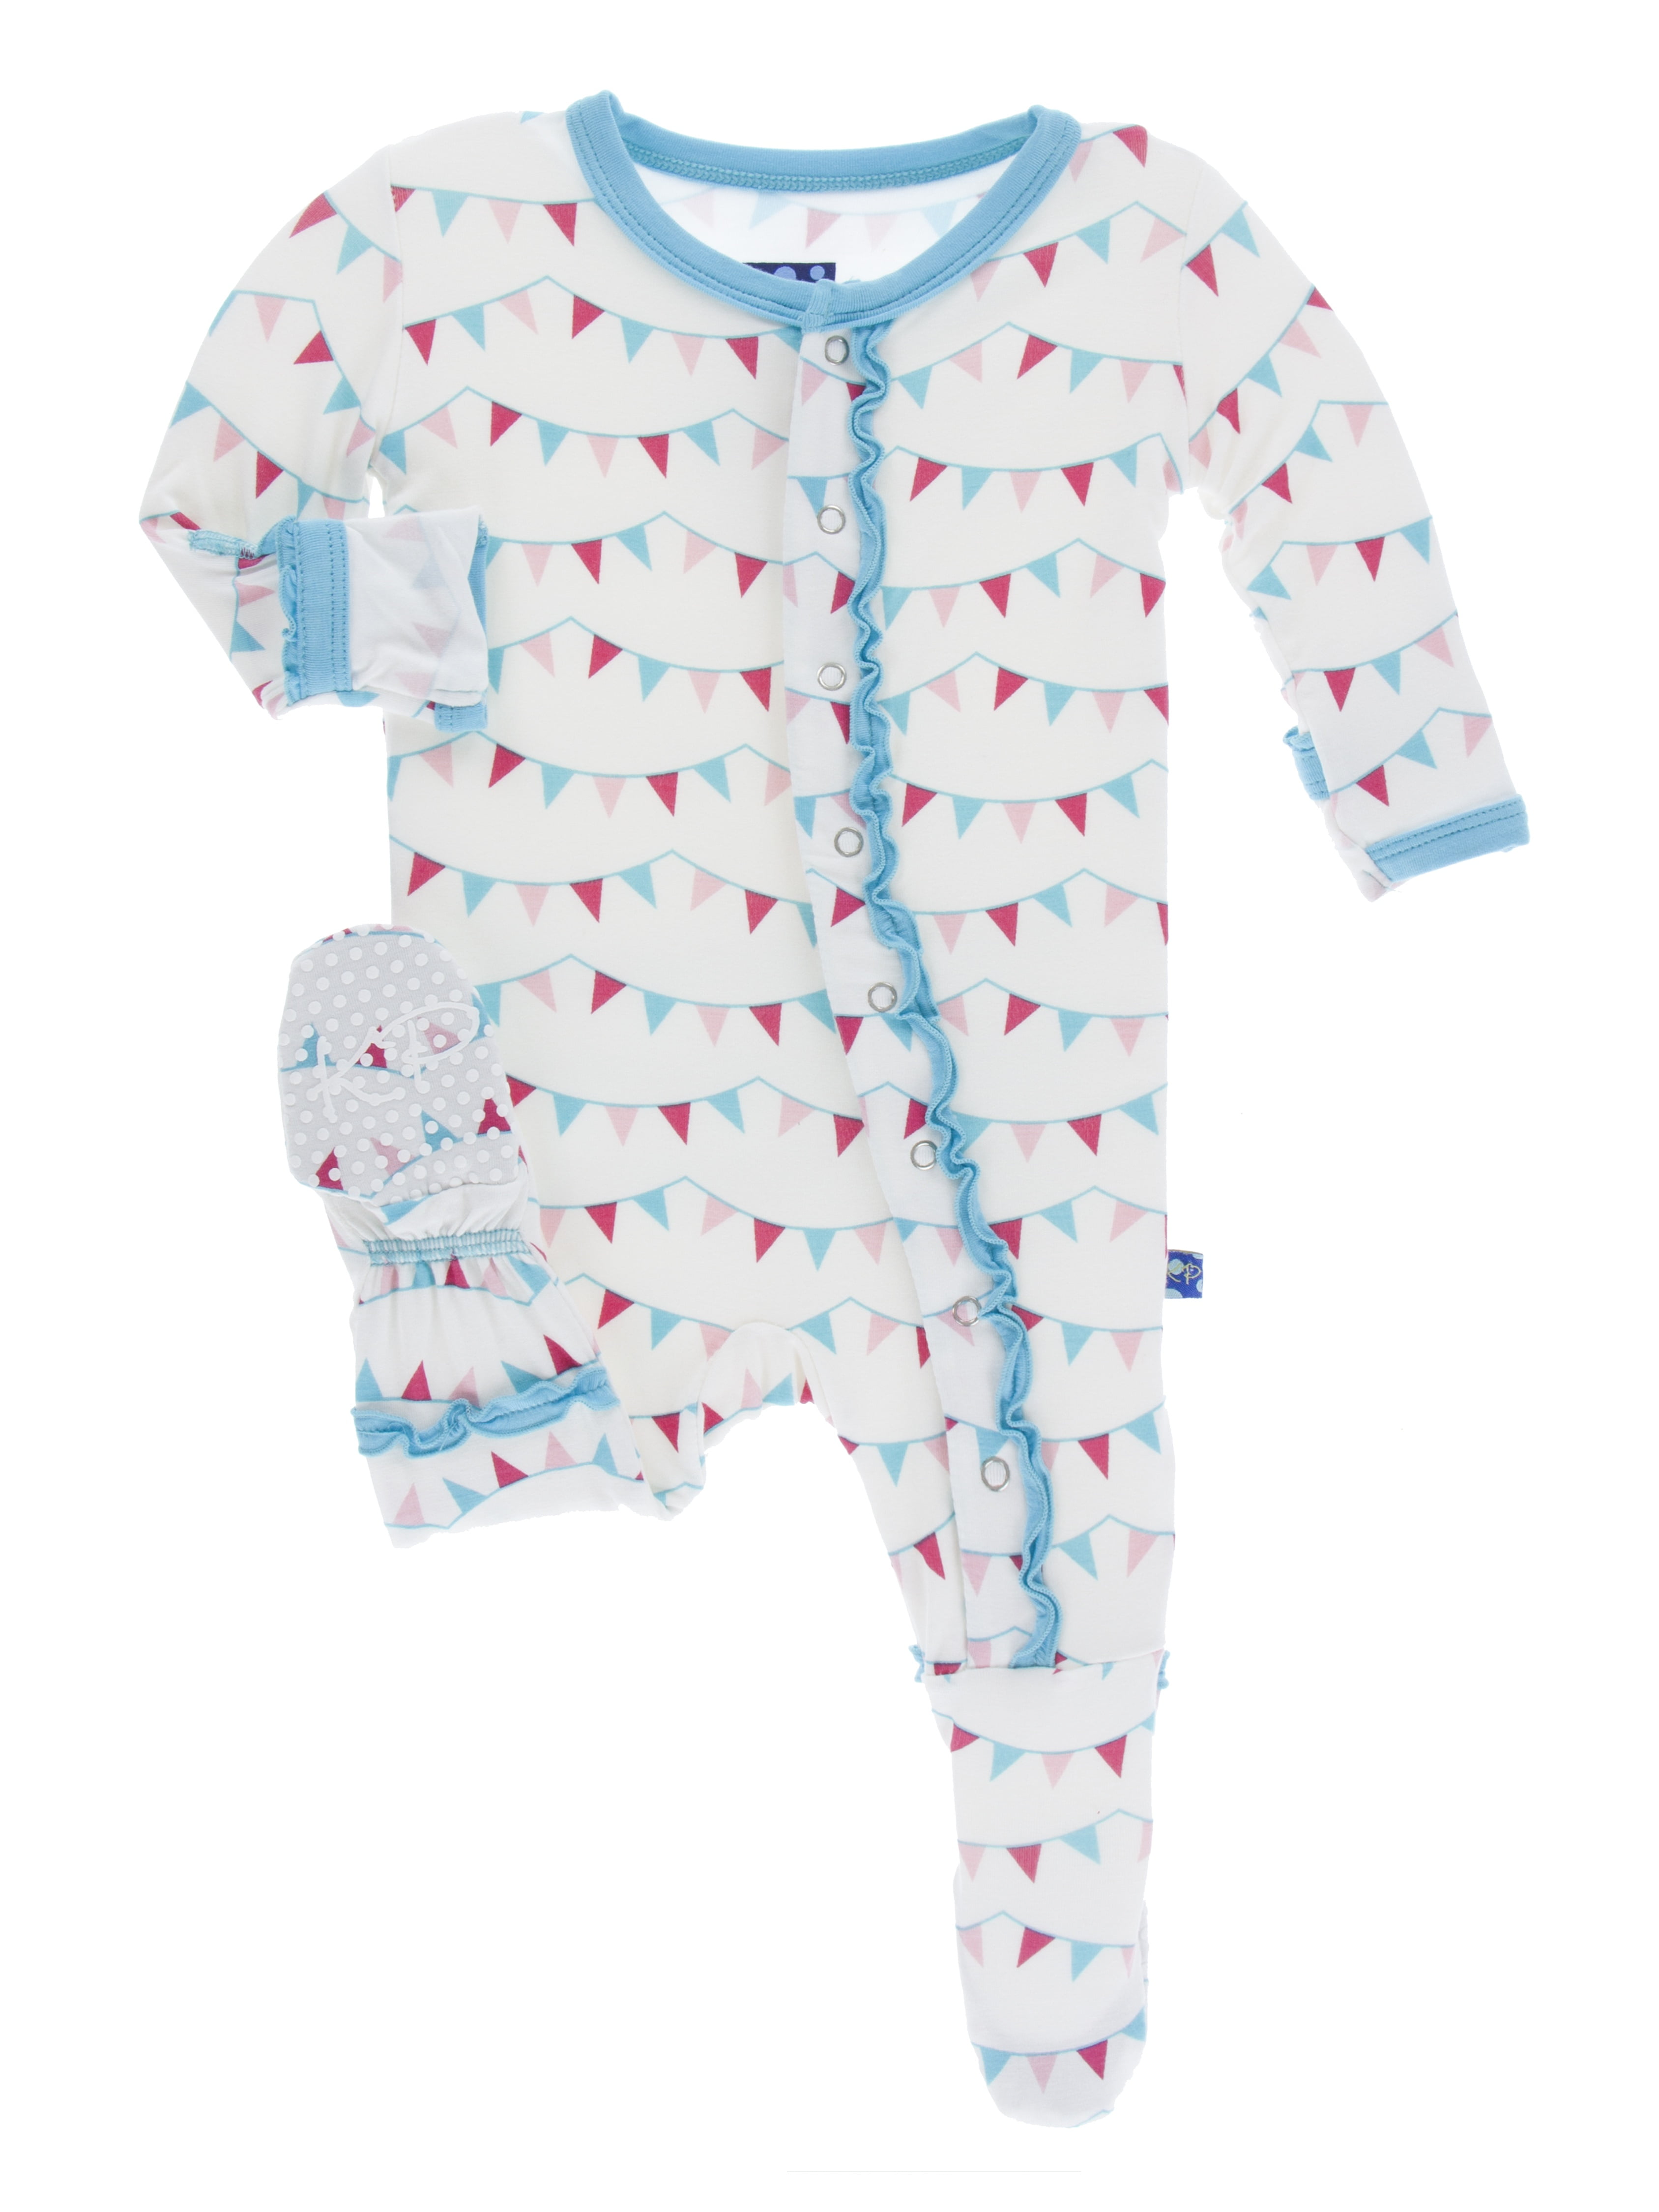 Flamingo KicKee Pants Baby Girls Ruffle Tank Toddler/Kid